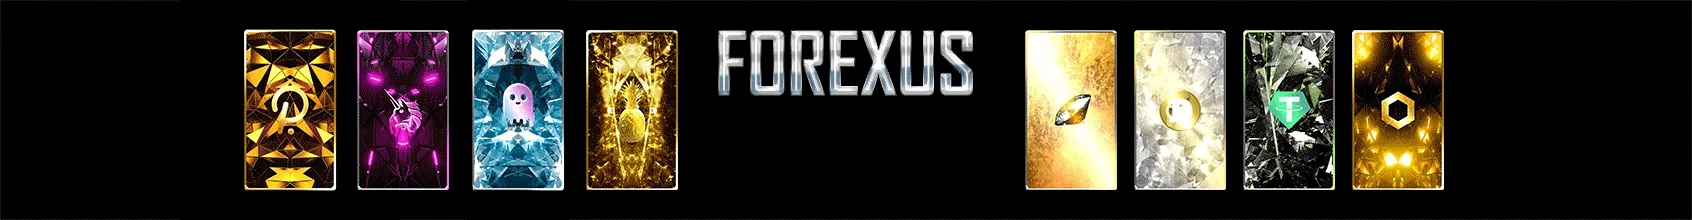 Forexus banner